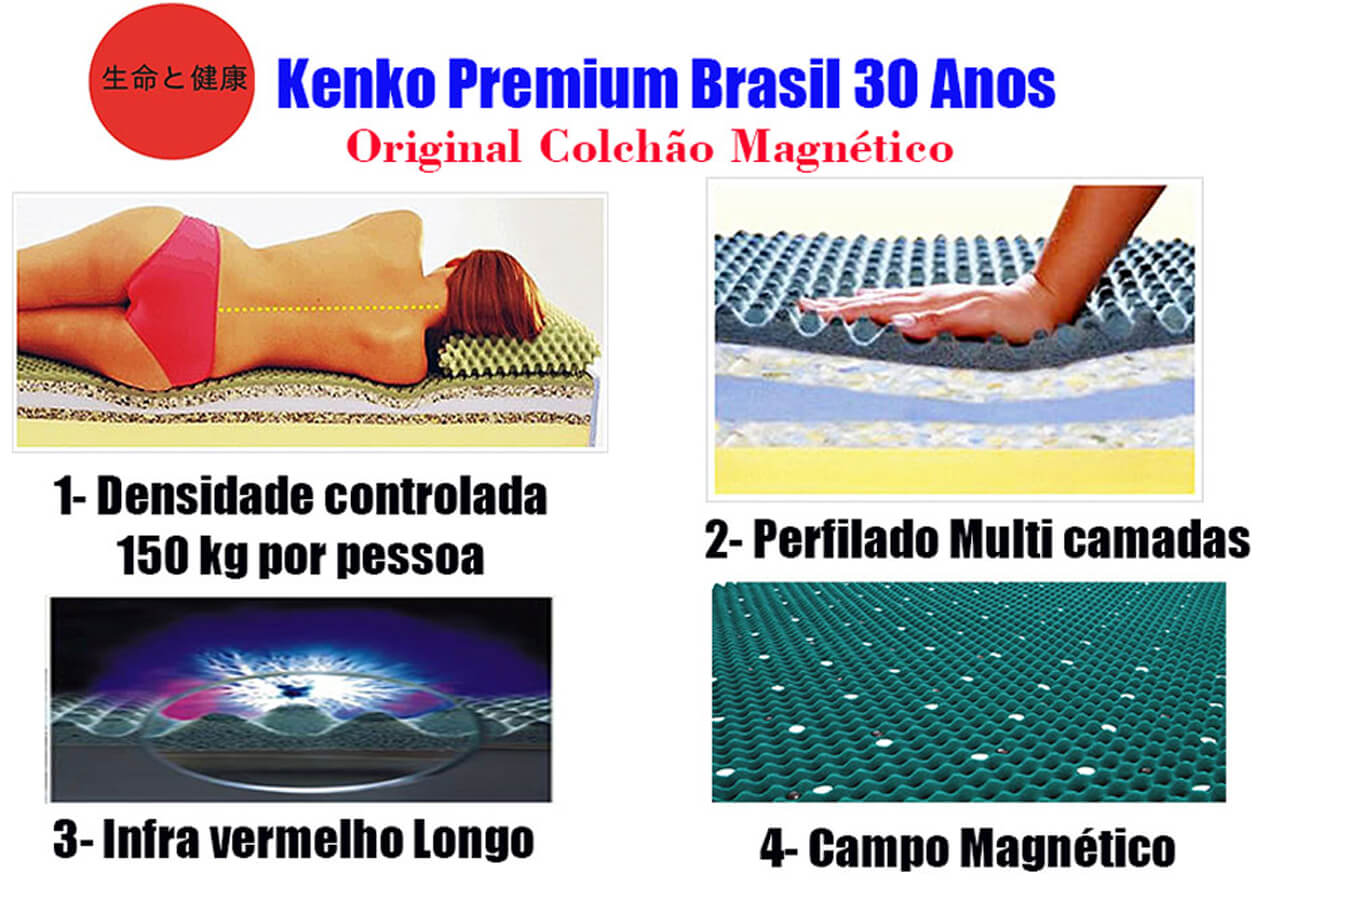 Colchão Magnético King Size 1,93x2,03x25cm Kenko Premium Gold Linha Exportação  - Kenko Premium Colchões